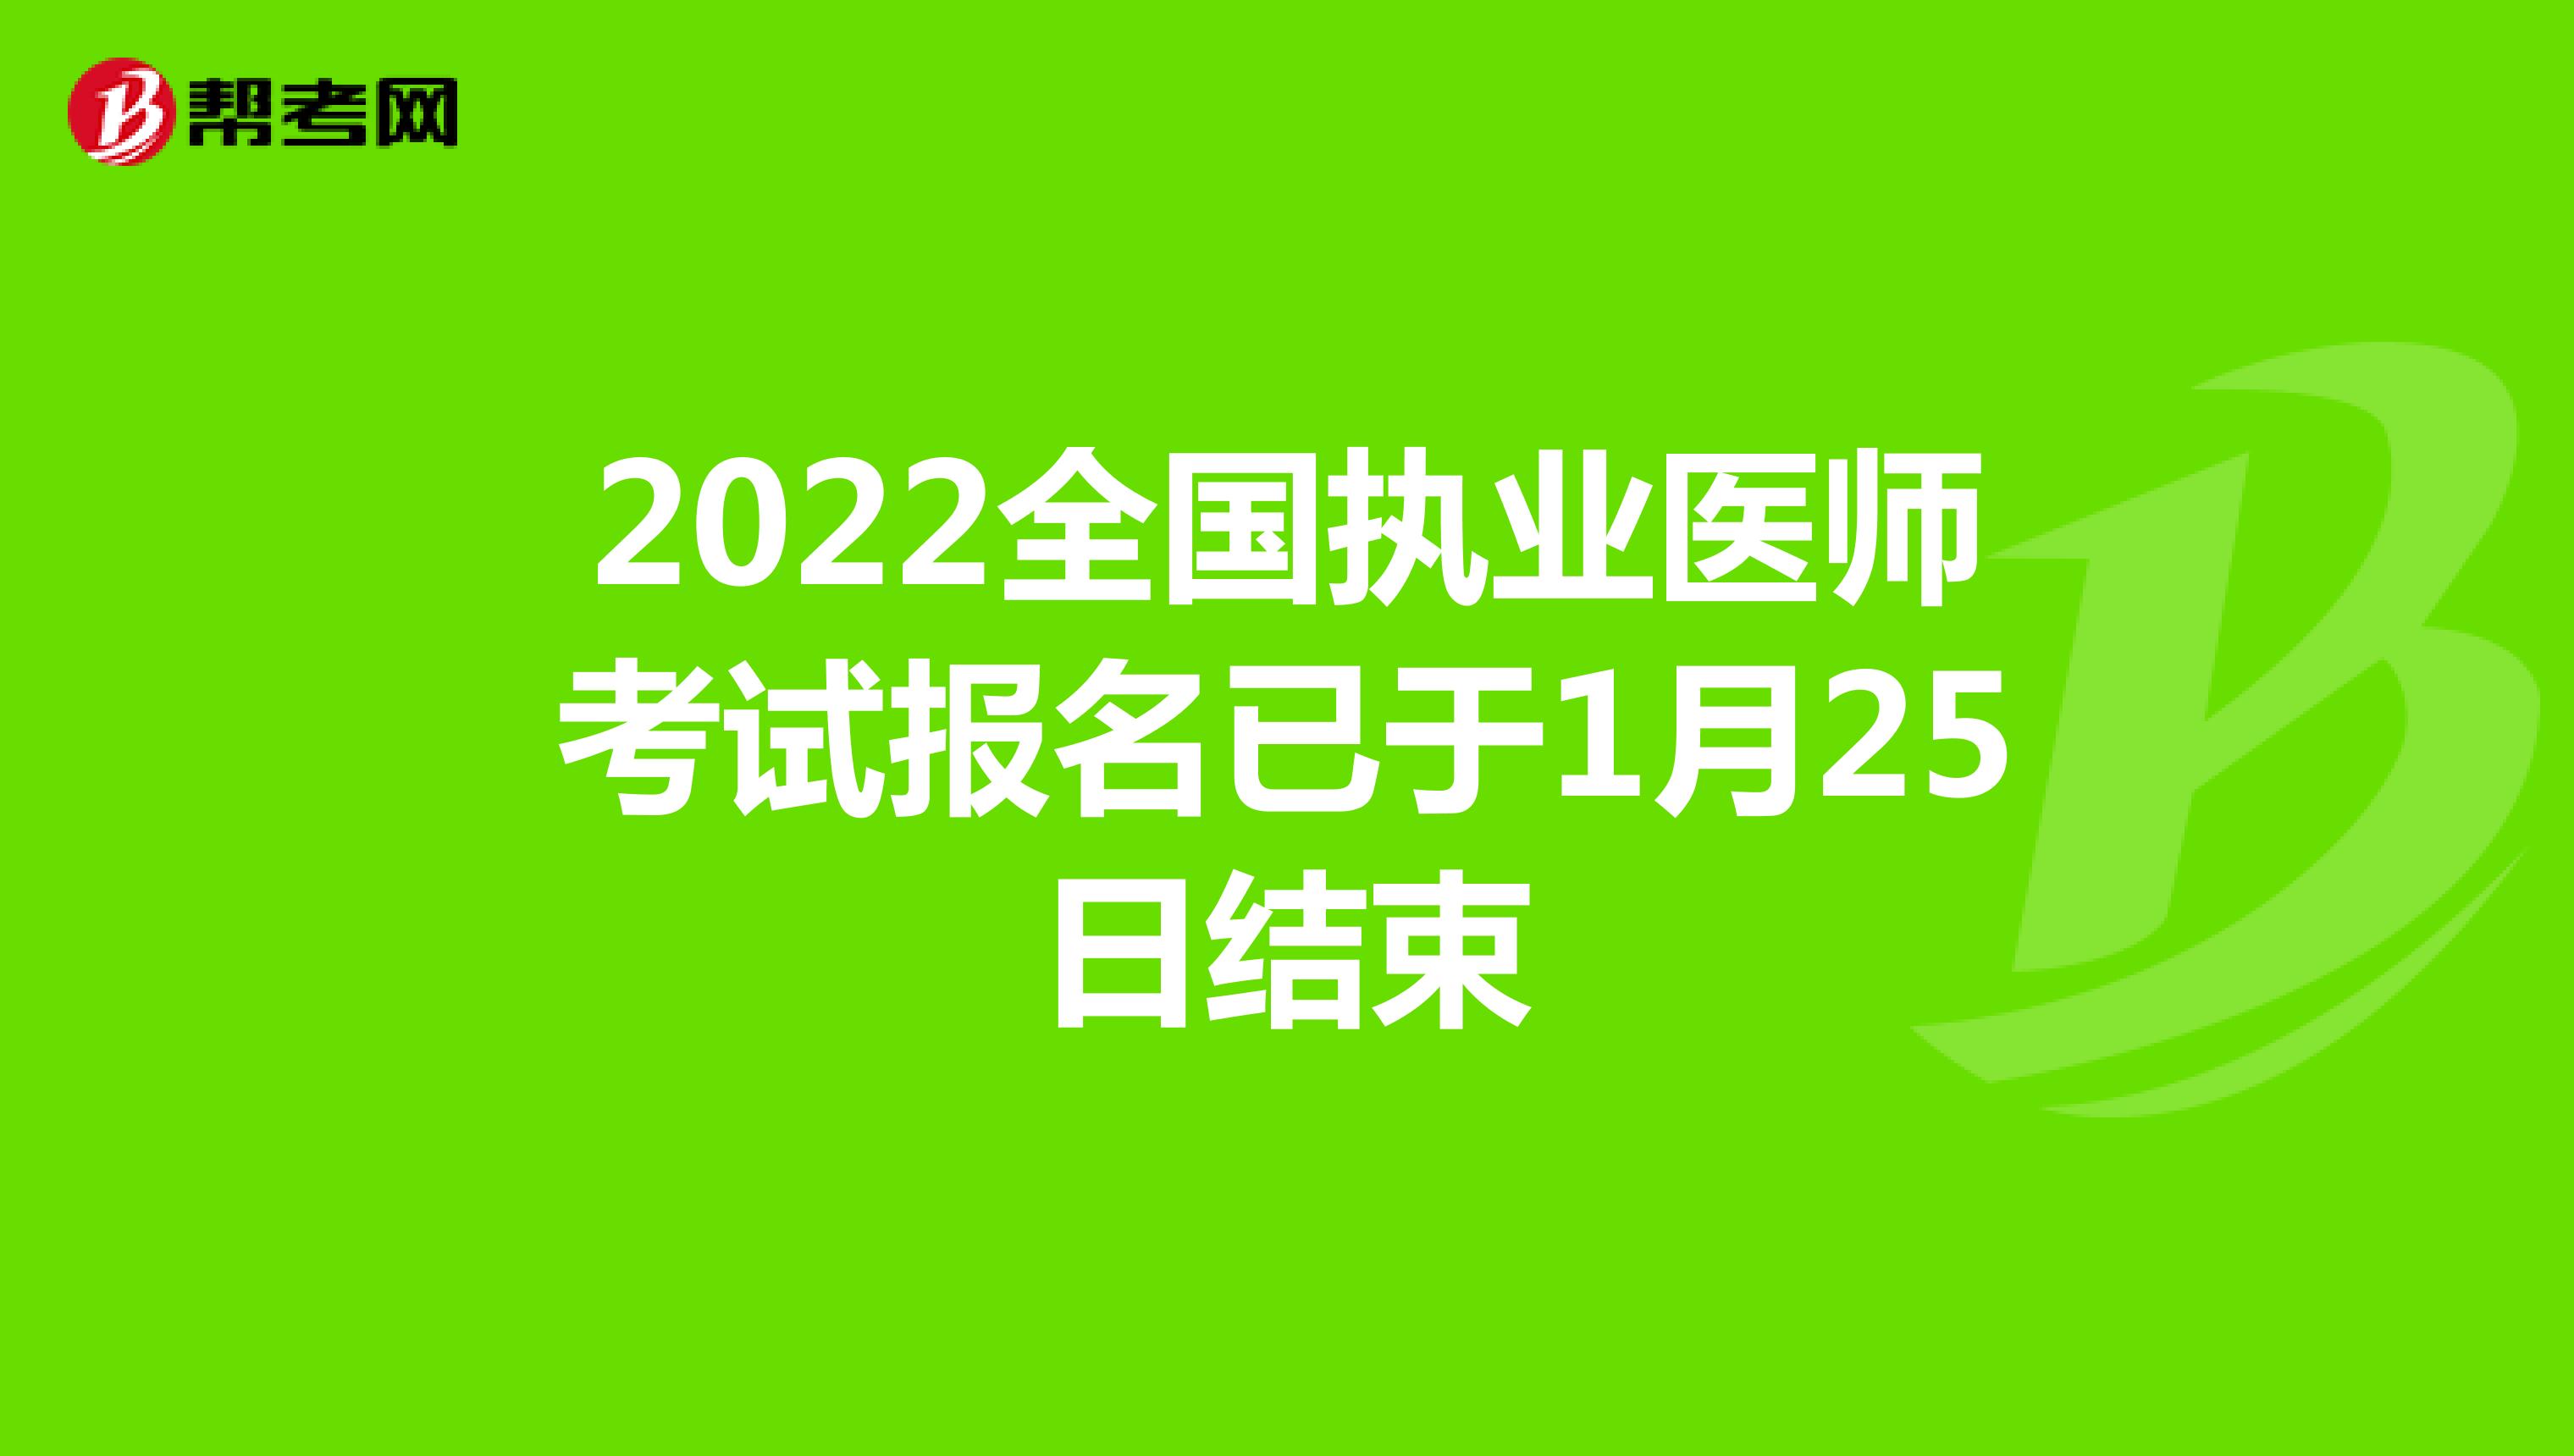 2022全国执业医师考试报名已于1月25日结束